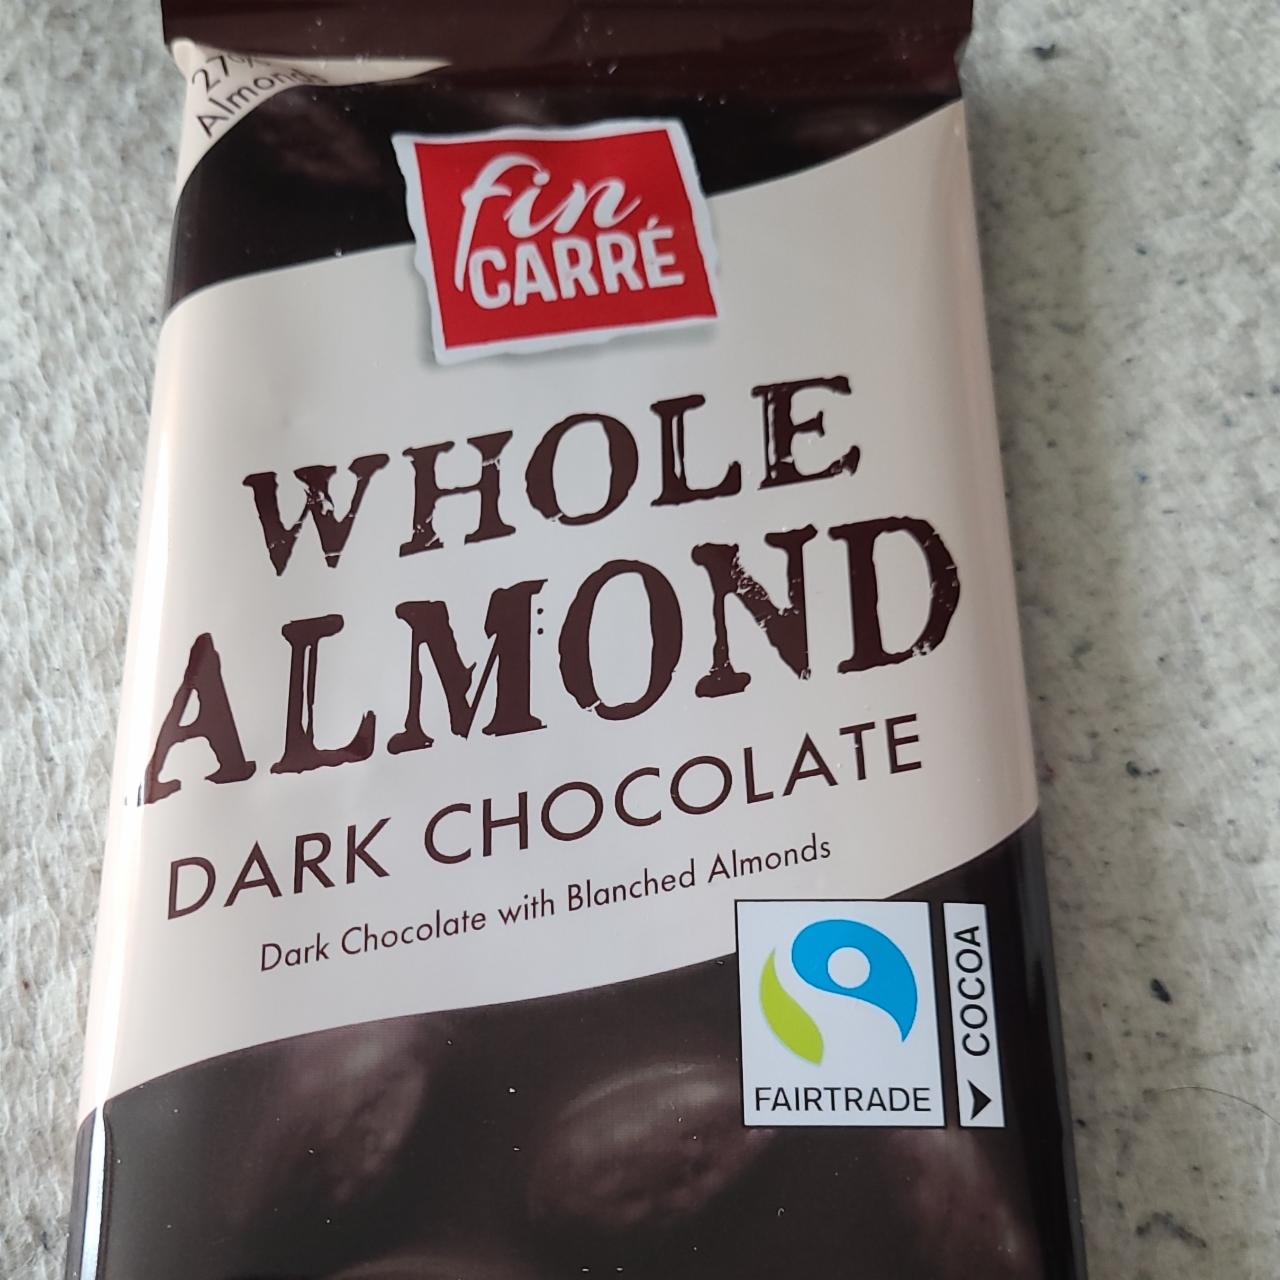 Fotografie - Whole almond Dark chocolate Fin Carré